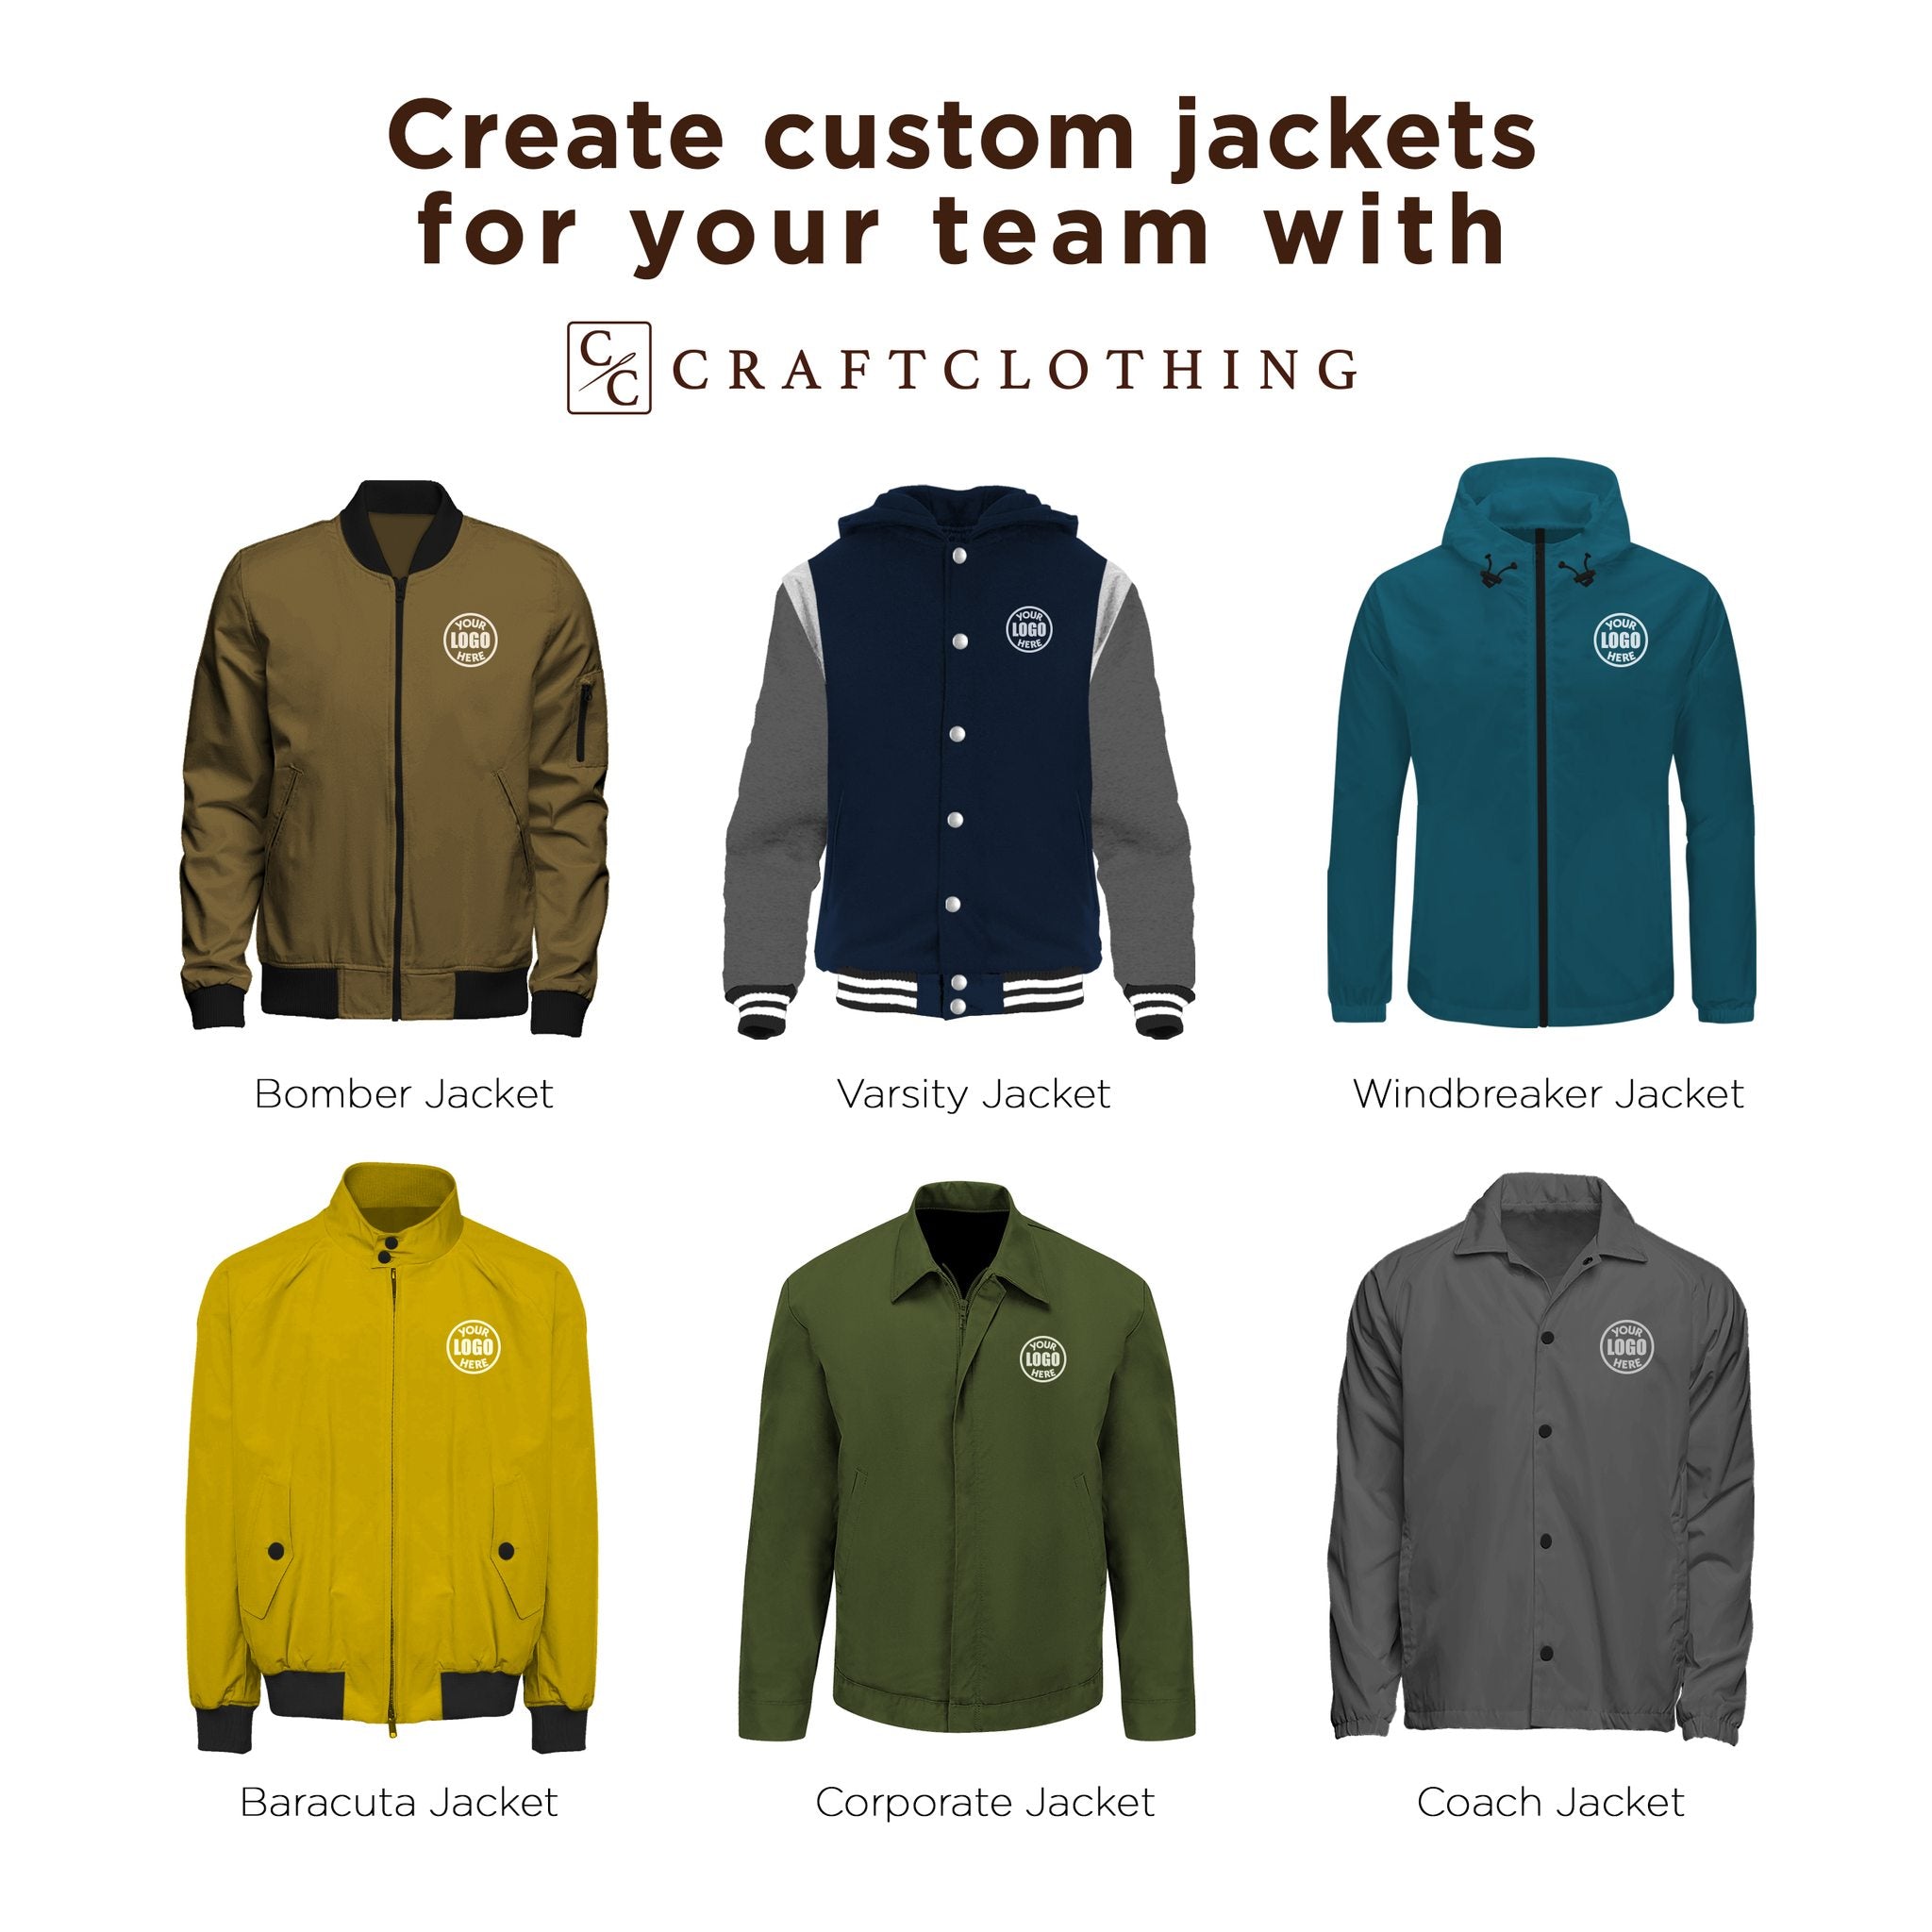 Create custom jackets for your team